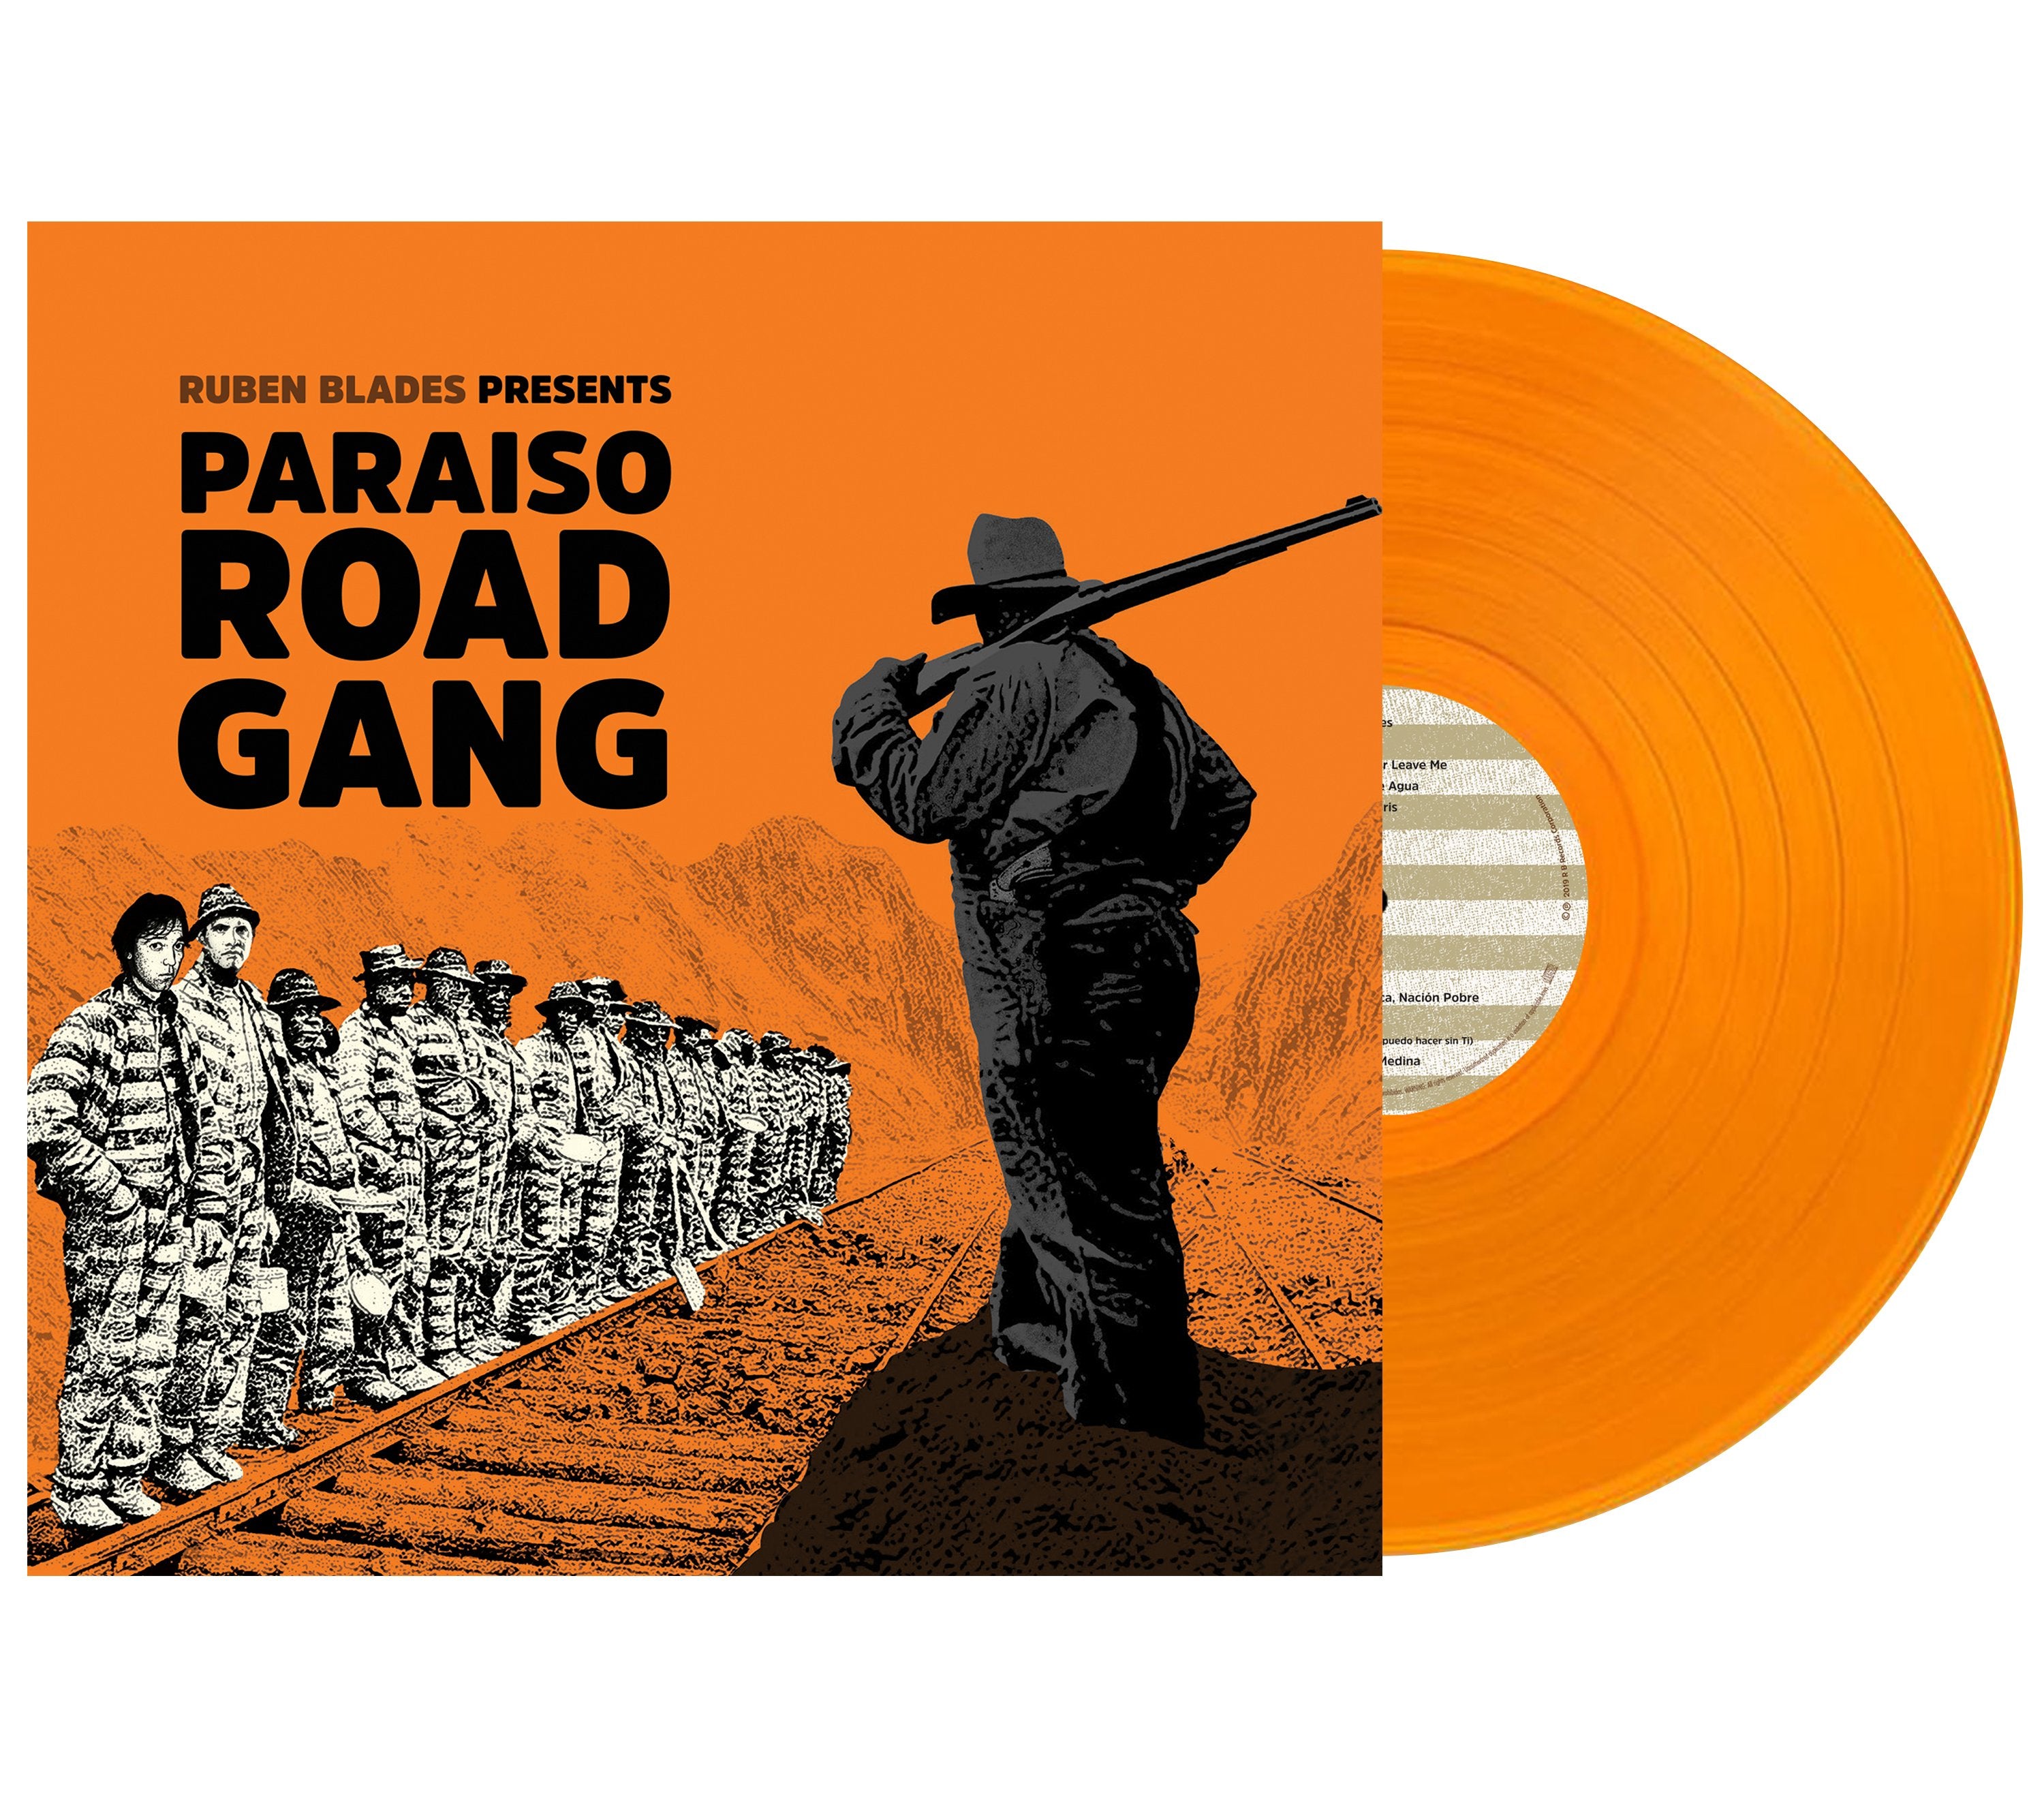 Rubén Blades - "Paraíso Road Gang" LP Vinyl